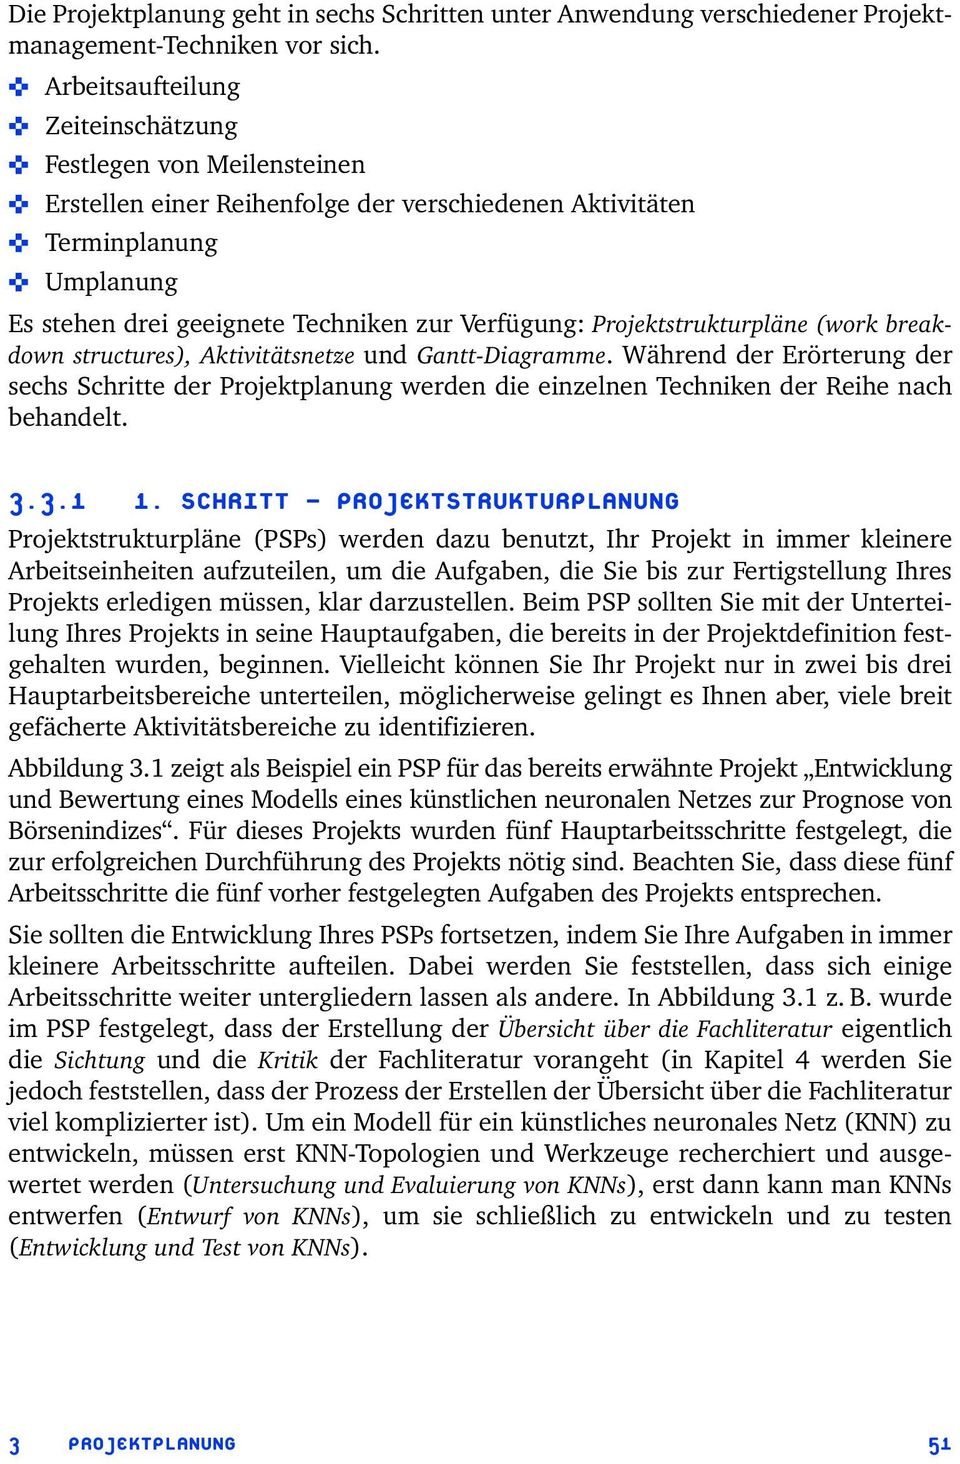 Projektstrukturpläne (work breakdown structures), Aktivitätsnetze und Gantt-Diagramme.